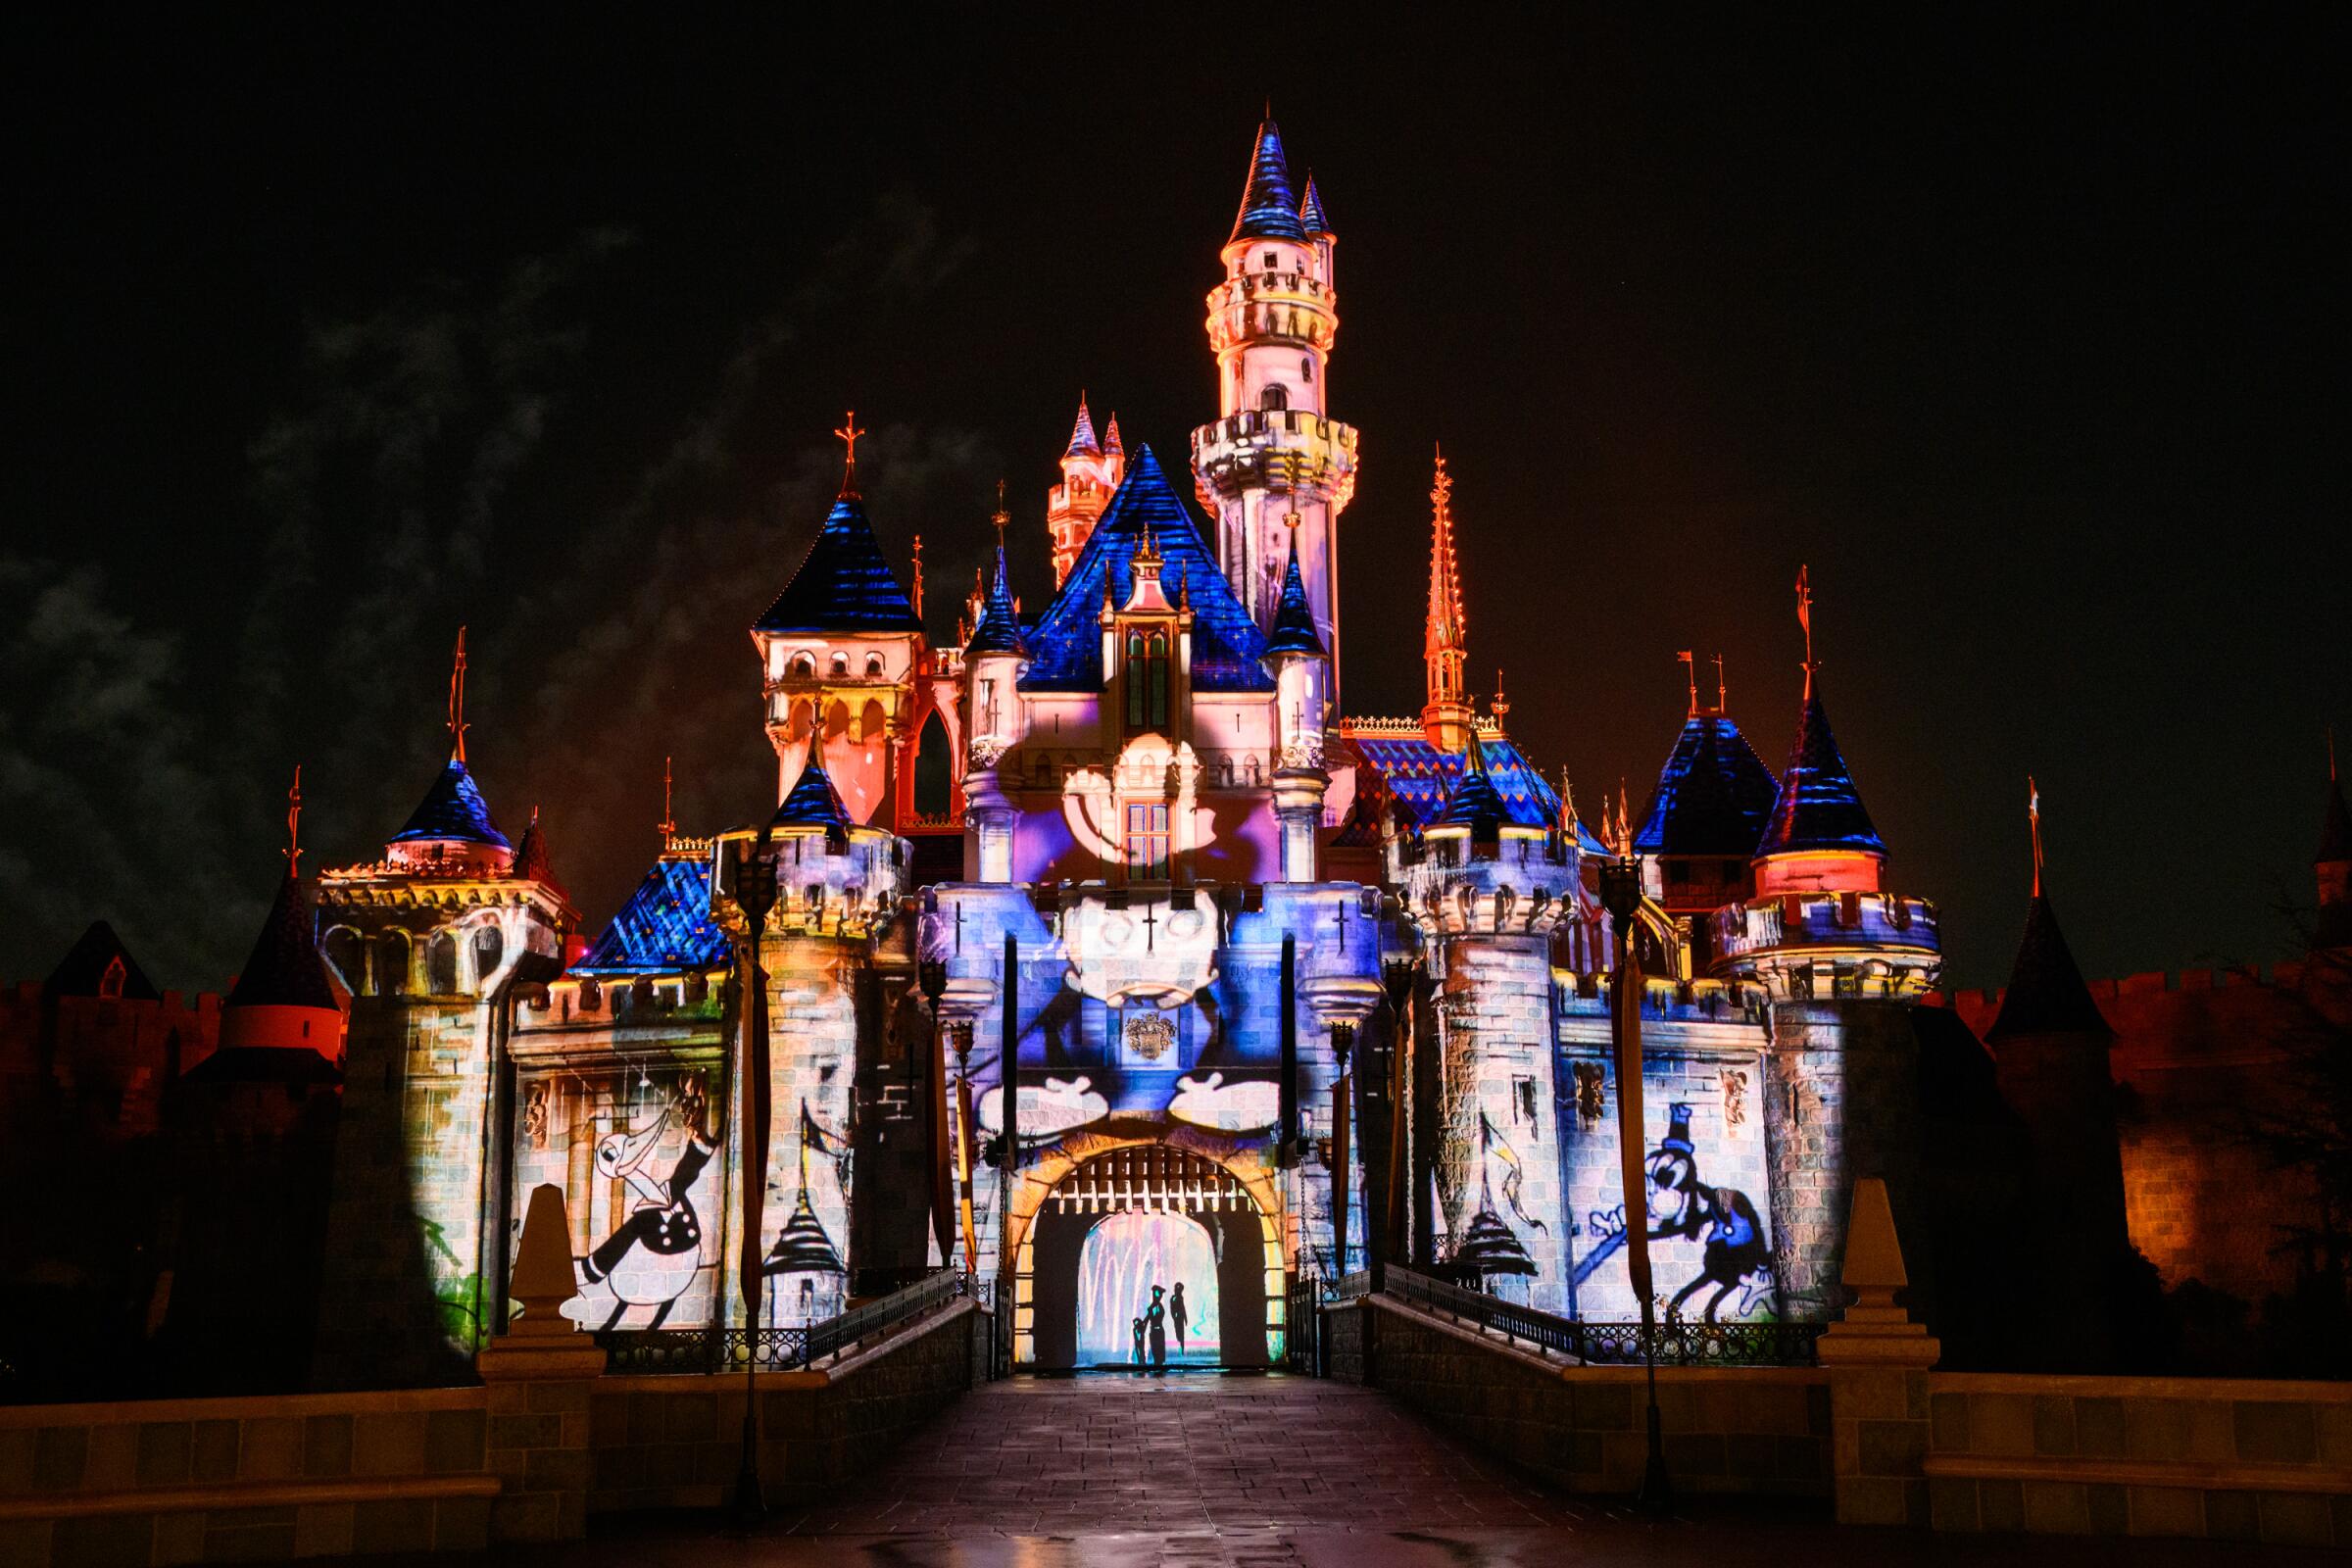 Disney celebra su 100º aniversario en el mundo entero: todo lo que